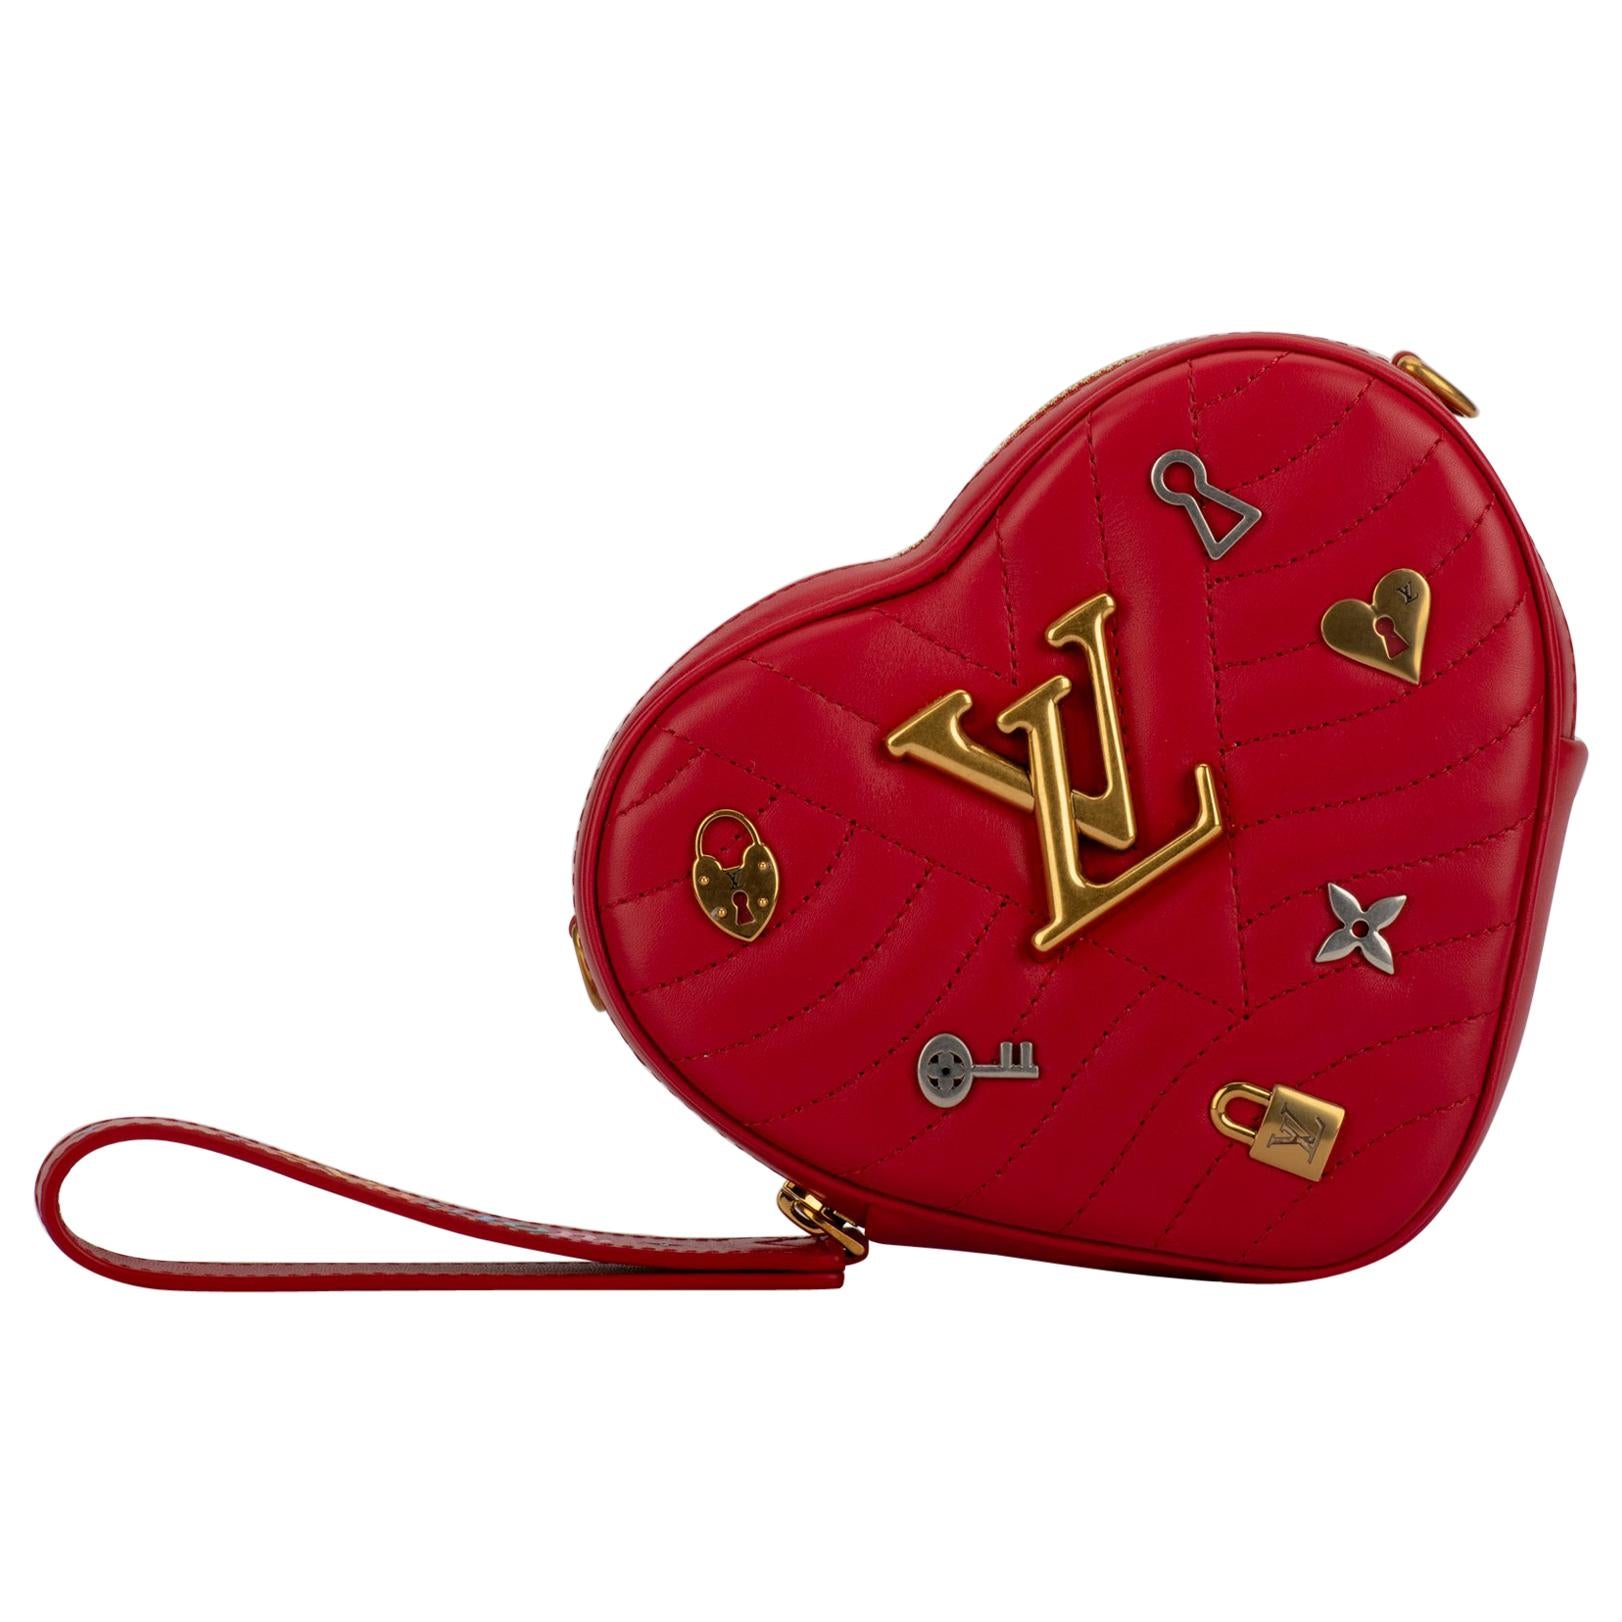 Sac à main pochette à breloques cœur rouge édition limitée Vuitton, neuf dans sa boîte